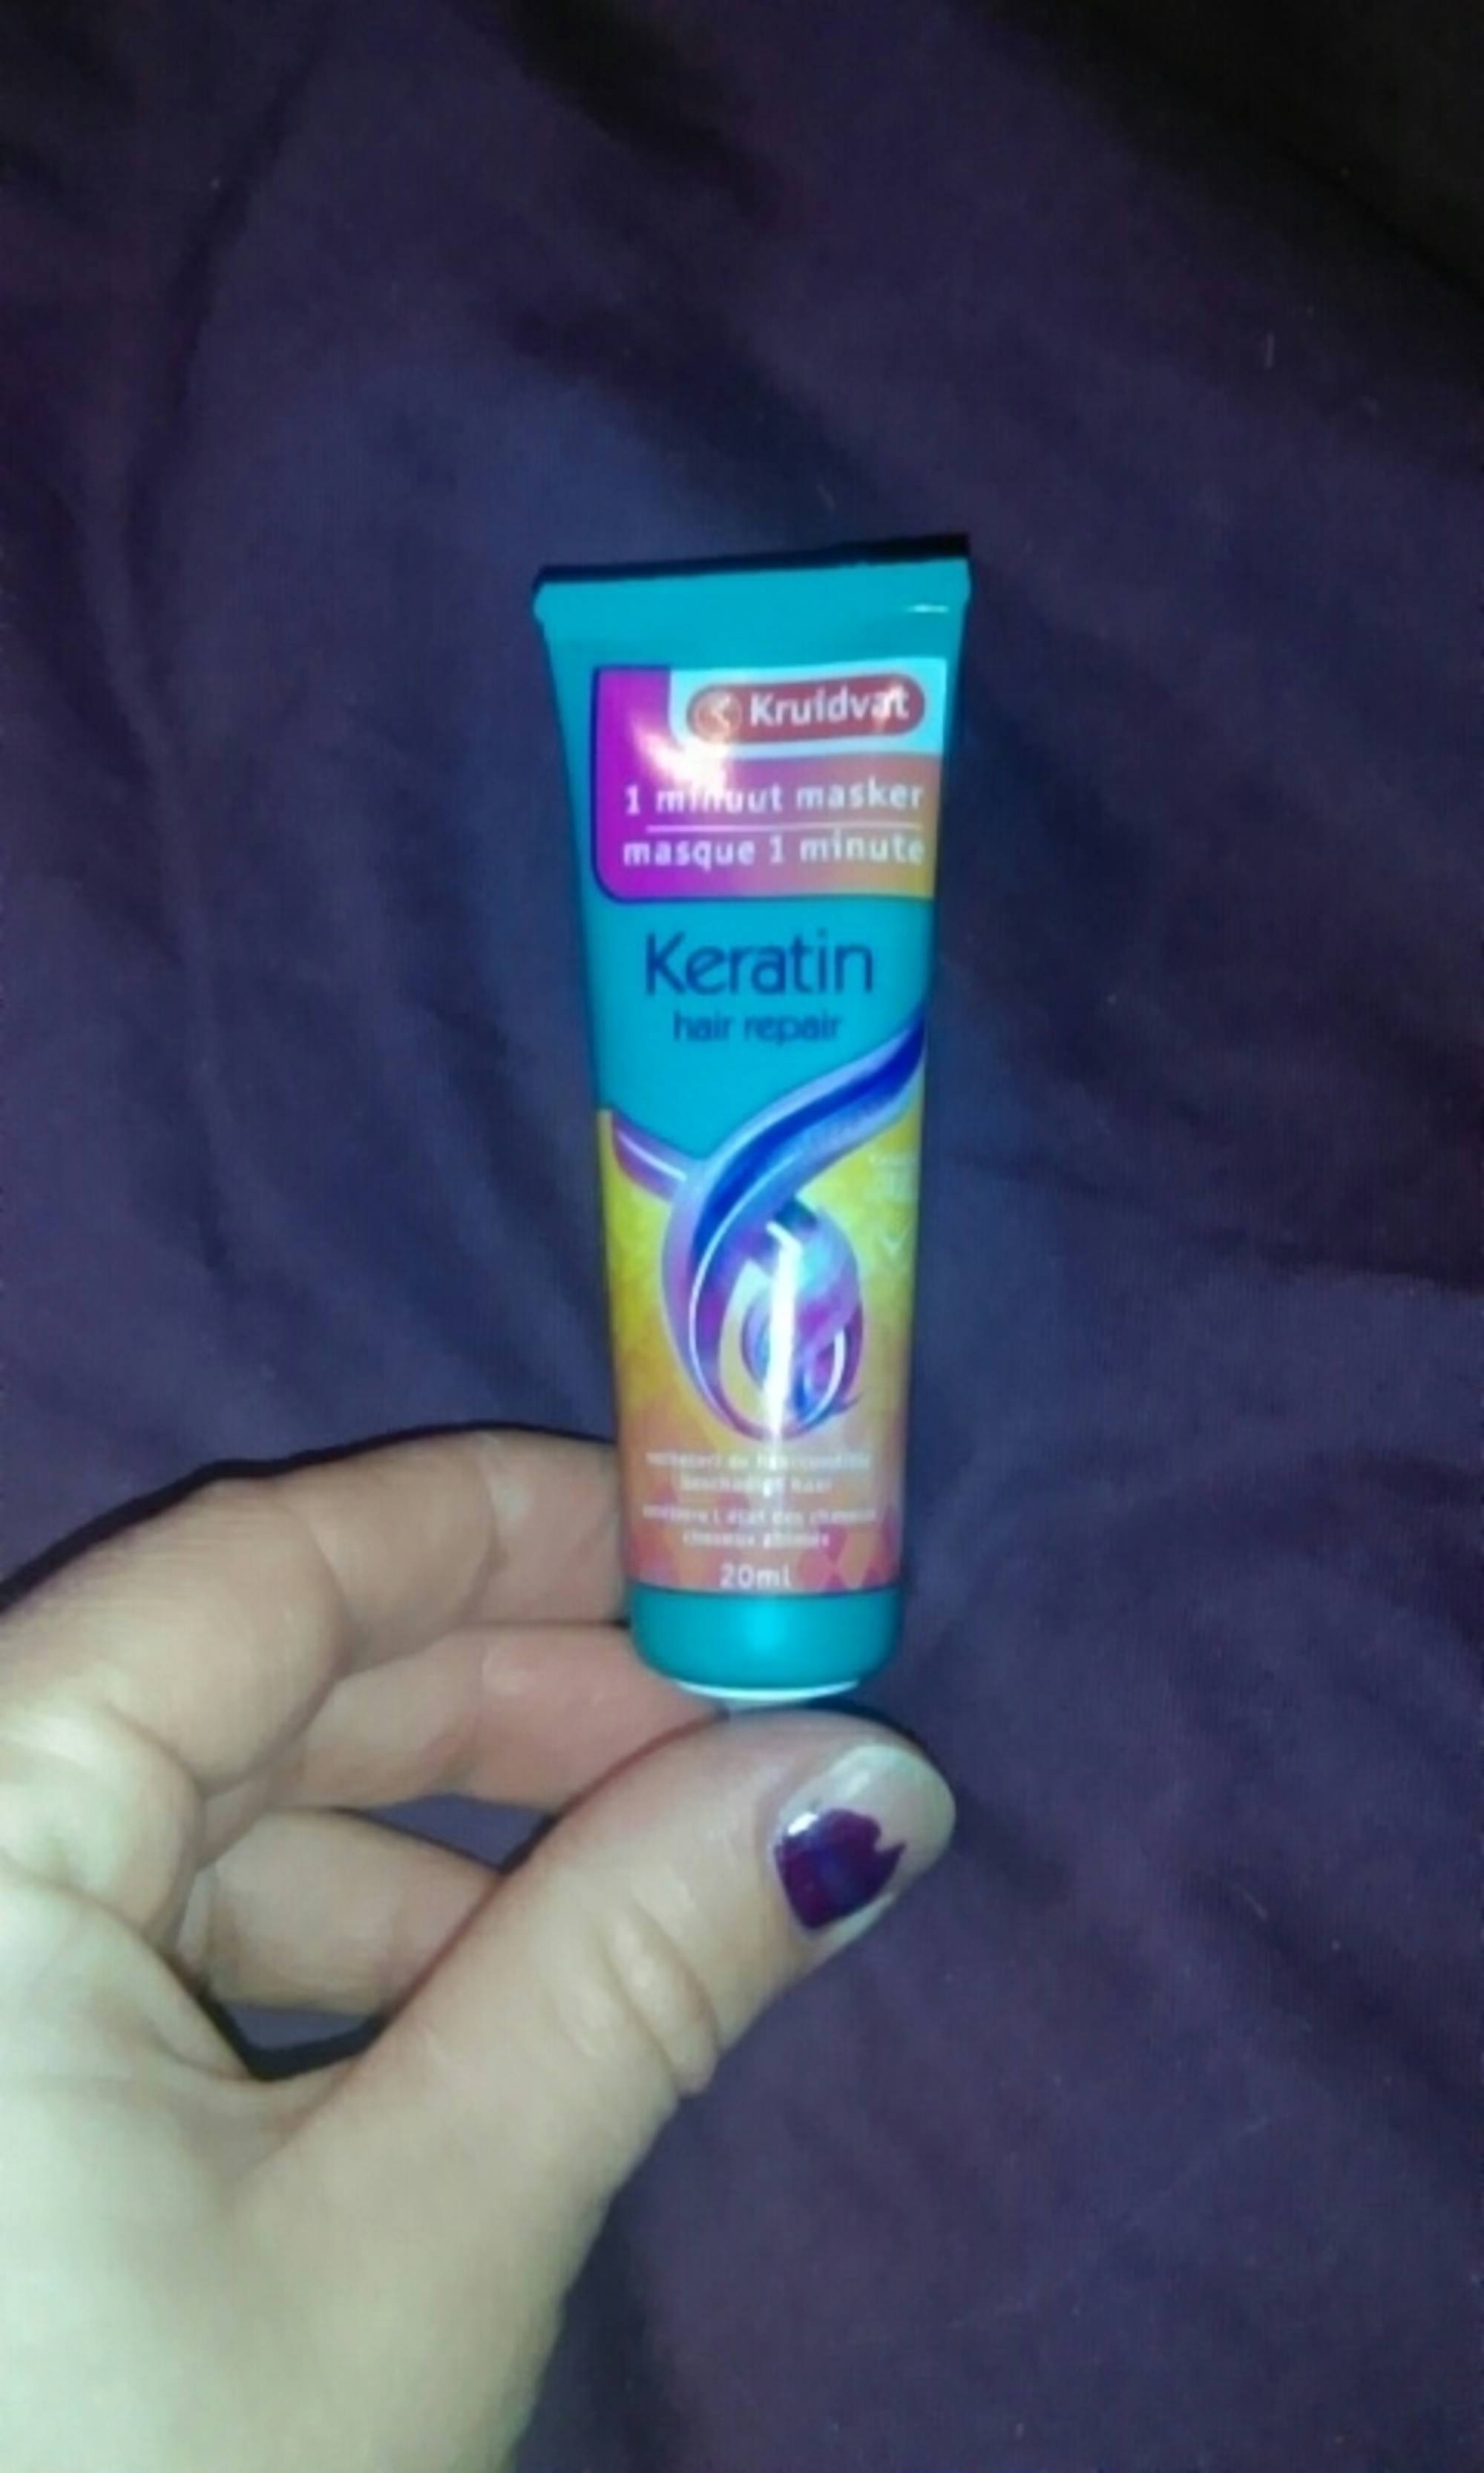 KRUIDVAT - Keratin hair repair - Masque 1 minute